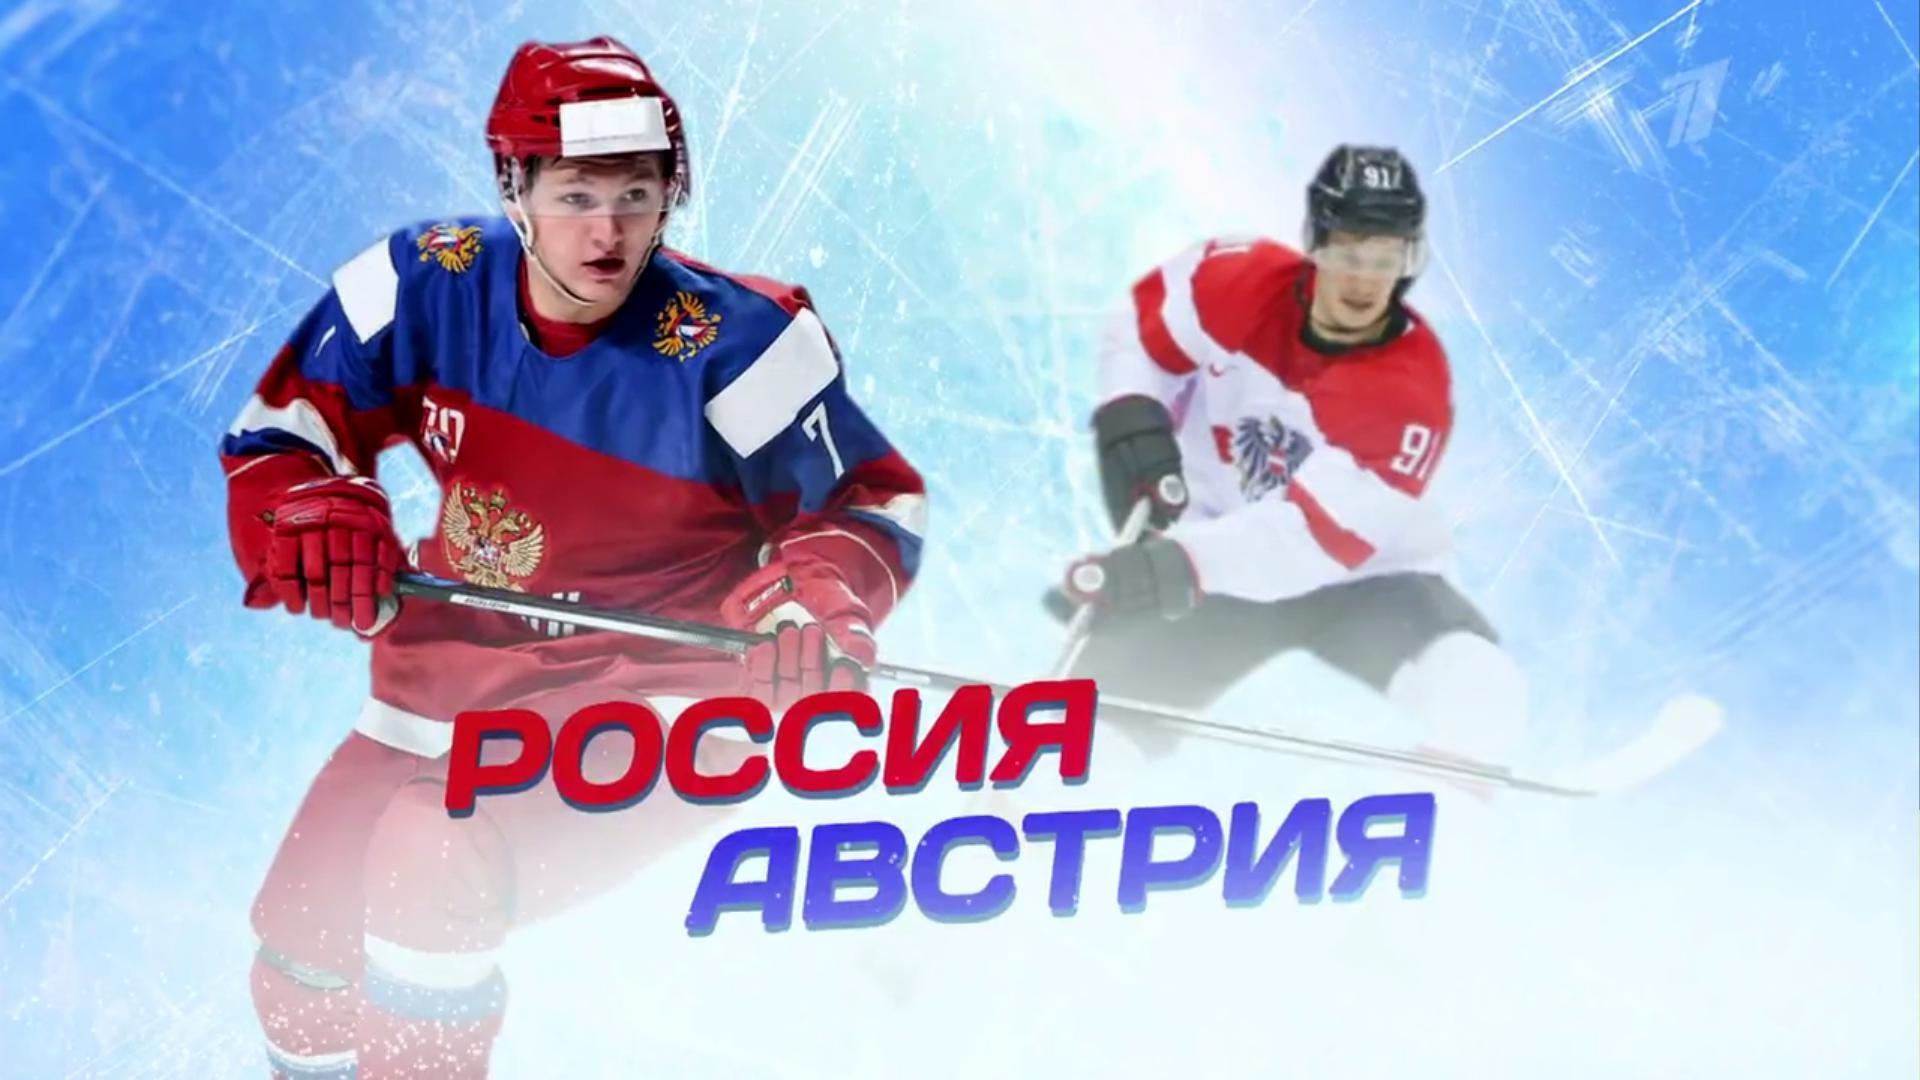 Чемпионат мира по хоккею 2018. Сборная России — Сборная Австрии. Прямой эфир